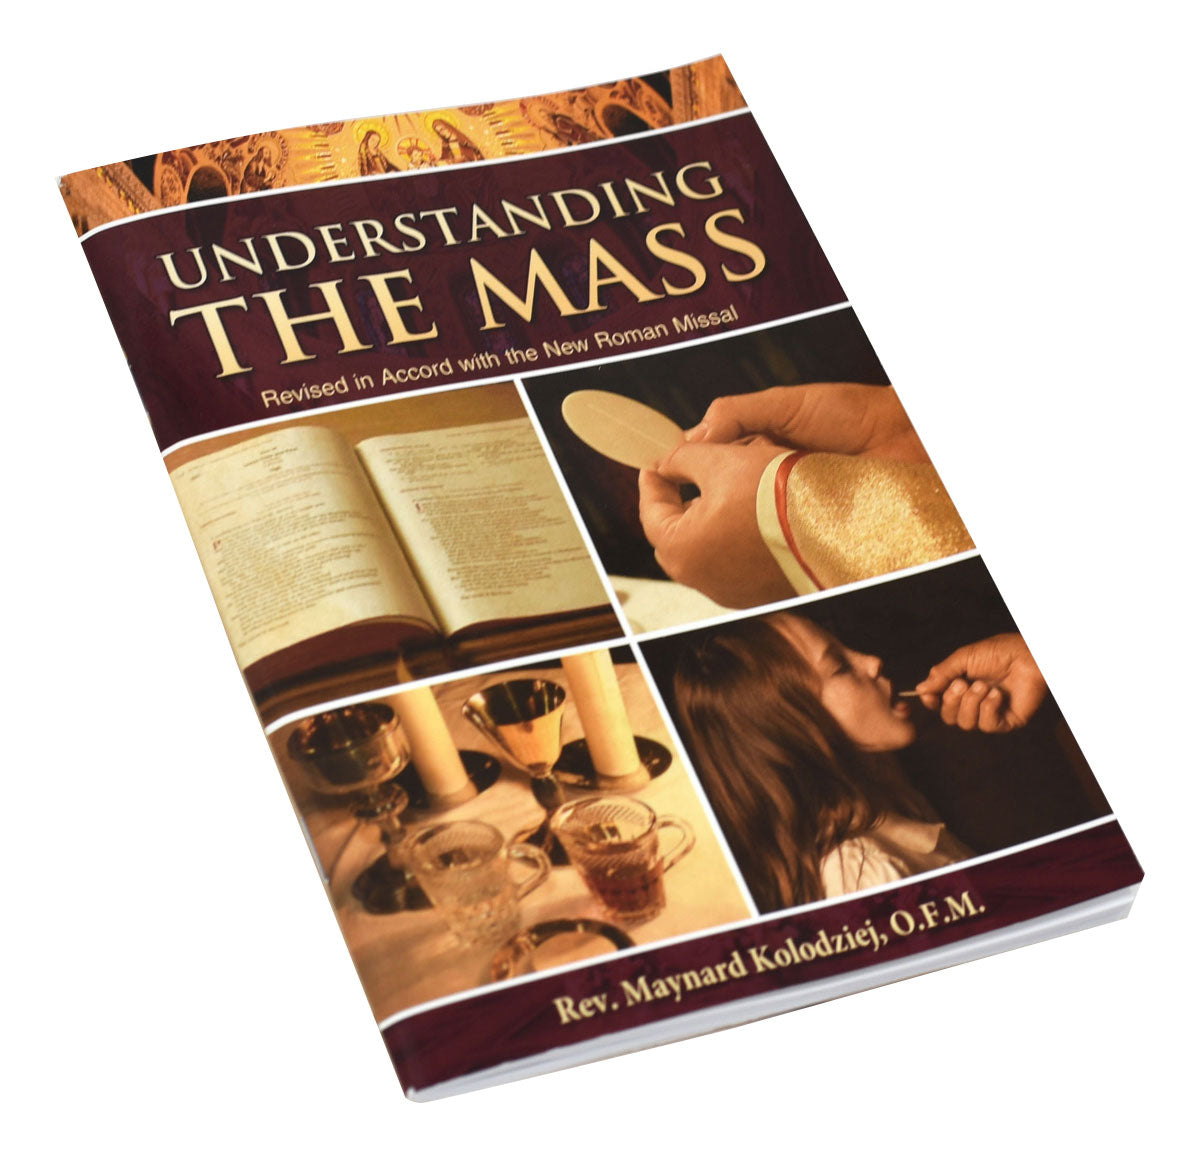 Understanding The Mass